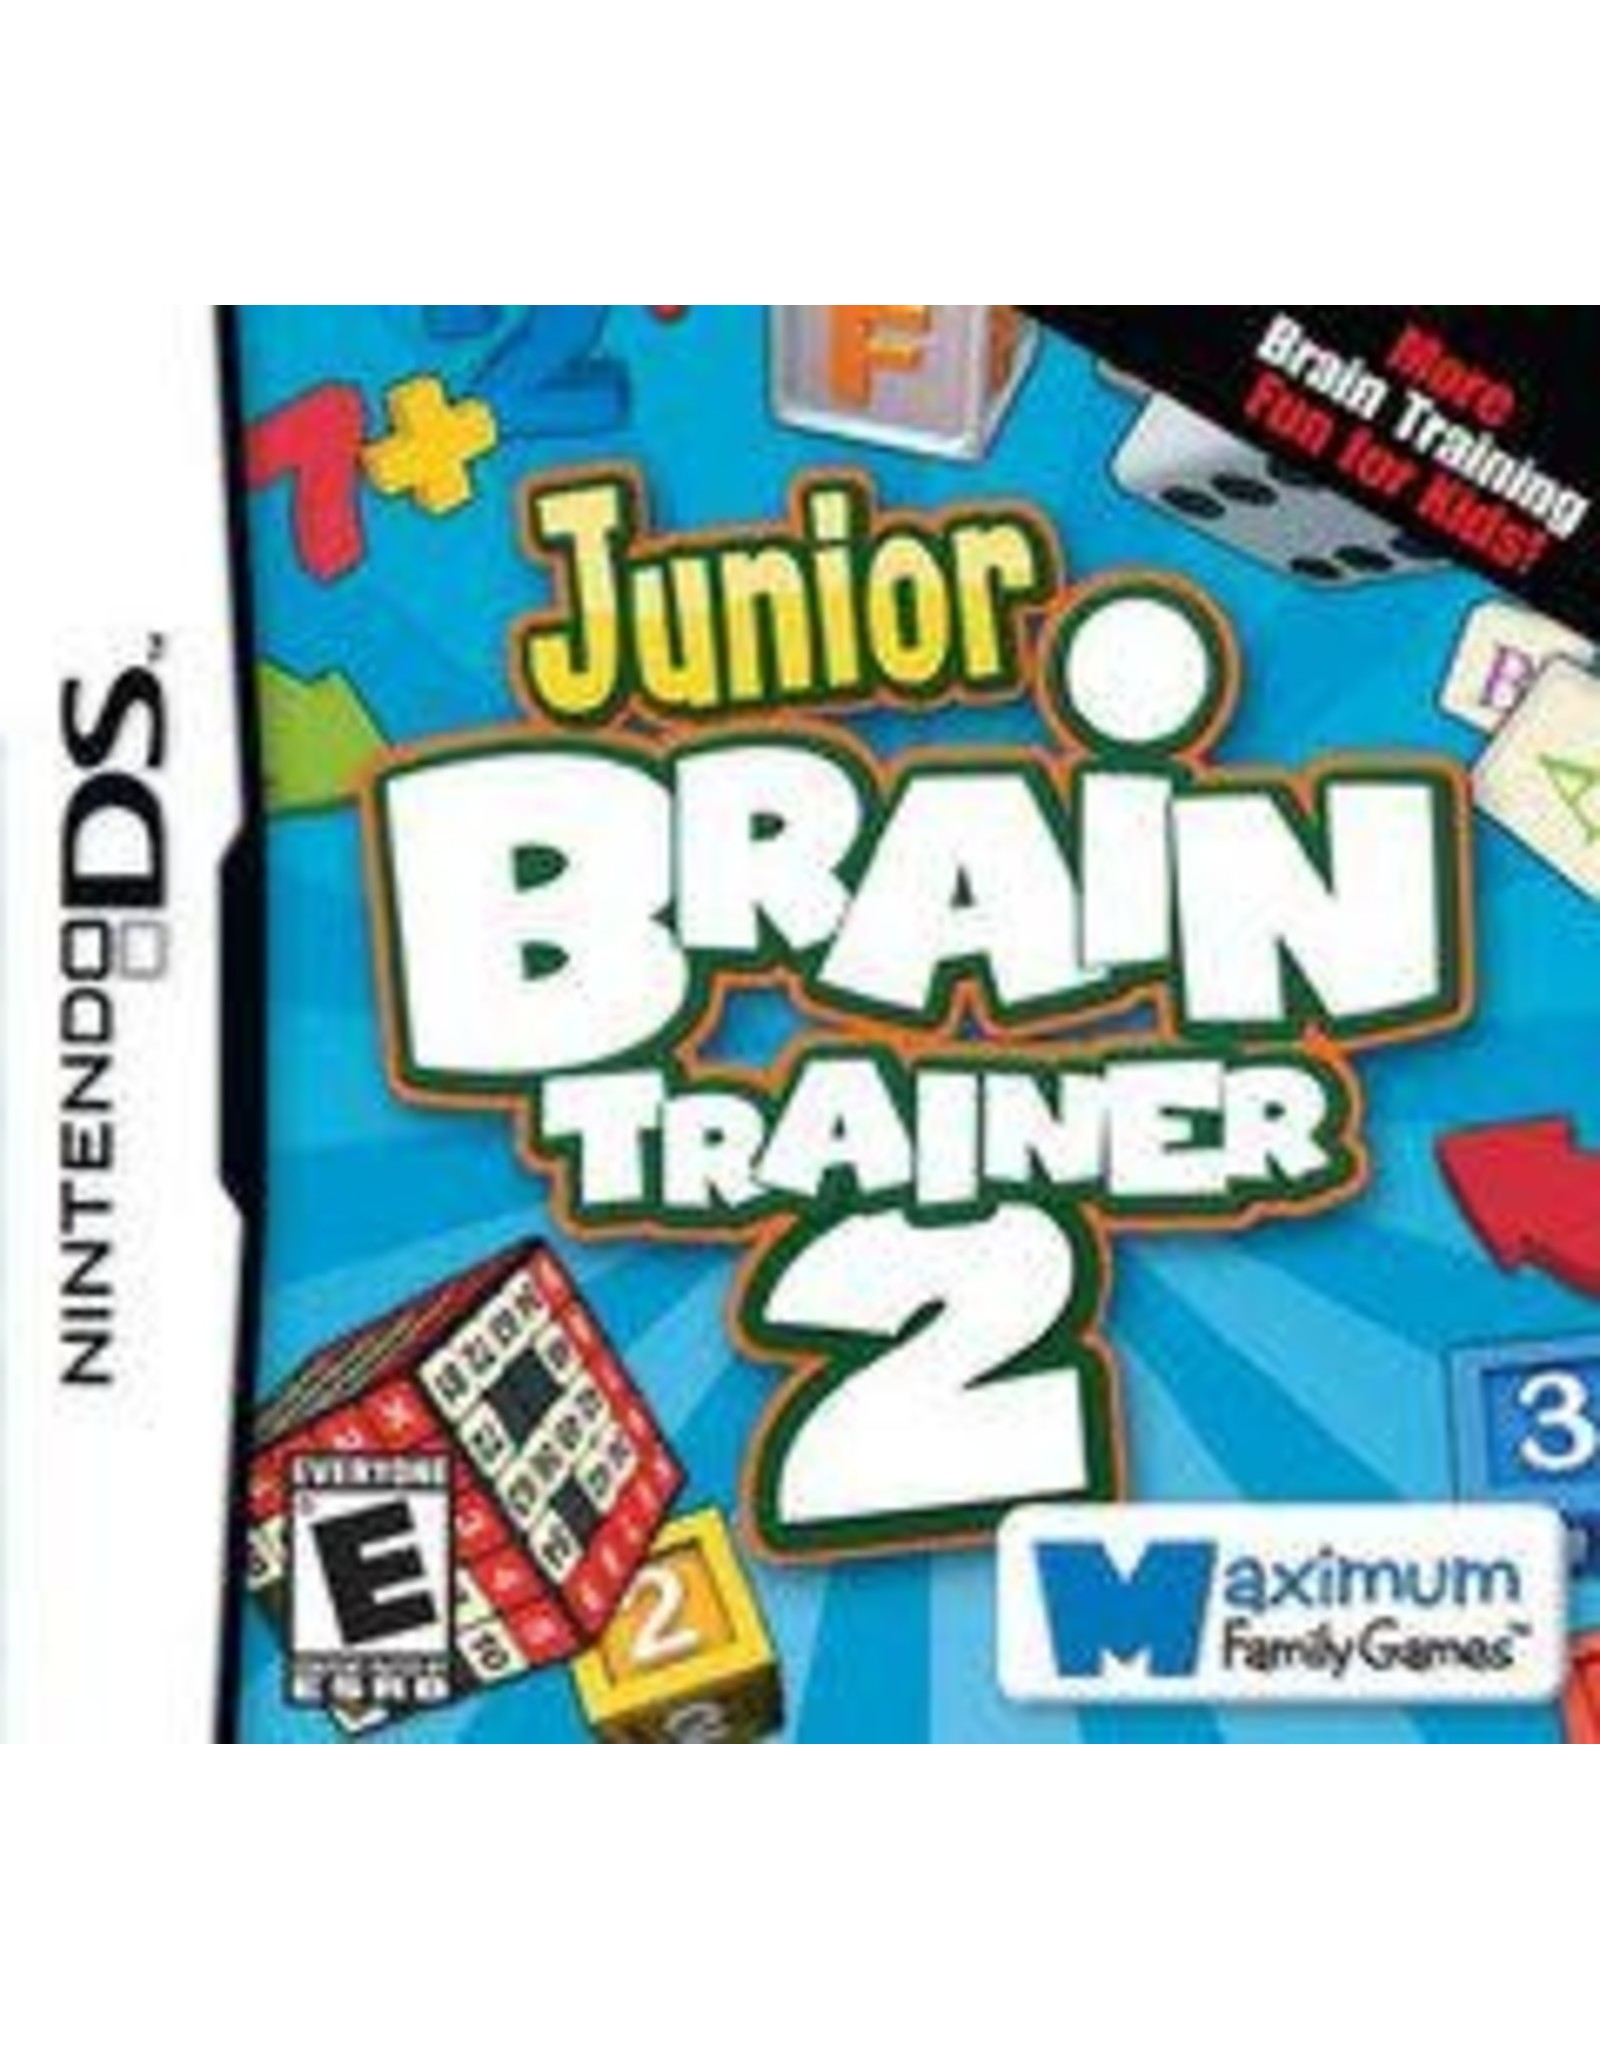 Nintendo DS Junior Brain Trainer 2 (CiB)